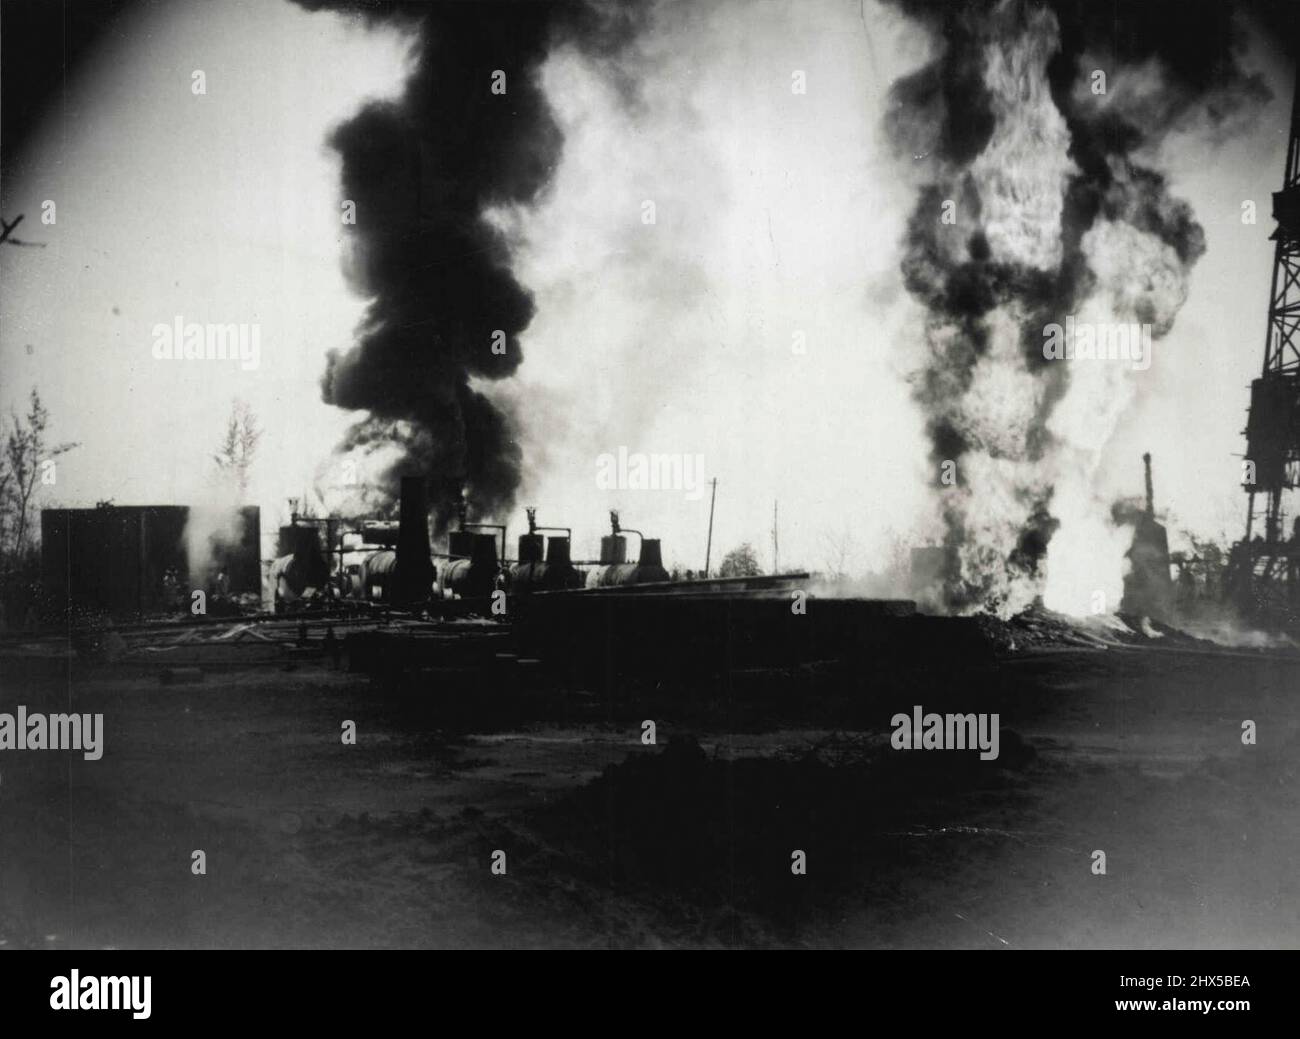 Un'immagine grafica di una sezione dell'inferno ardente sui giacimenti petroliferi britannici del Borneo attraverso cui gli Australian Army Engineers combattevano per spegnere gli incendi, mentre aspettavano l'arrivo di esperti di giacimenti petroliferi Shell e di combattenti antincendio professionisti oilwell che si precipitavano sulla scena. Marzo 27, 1946. Foto Stock